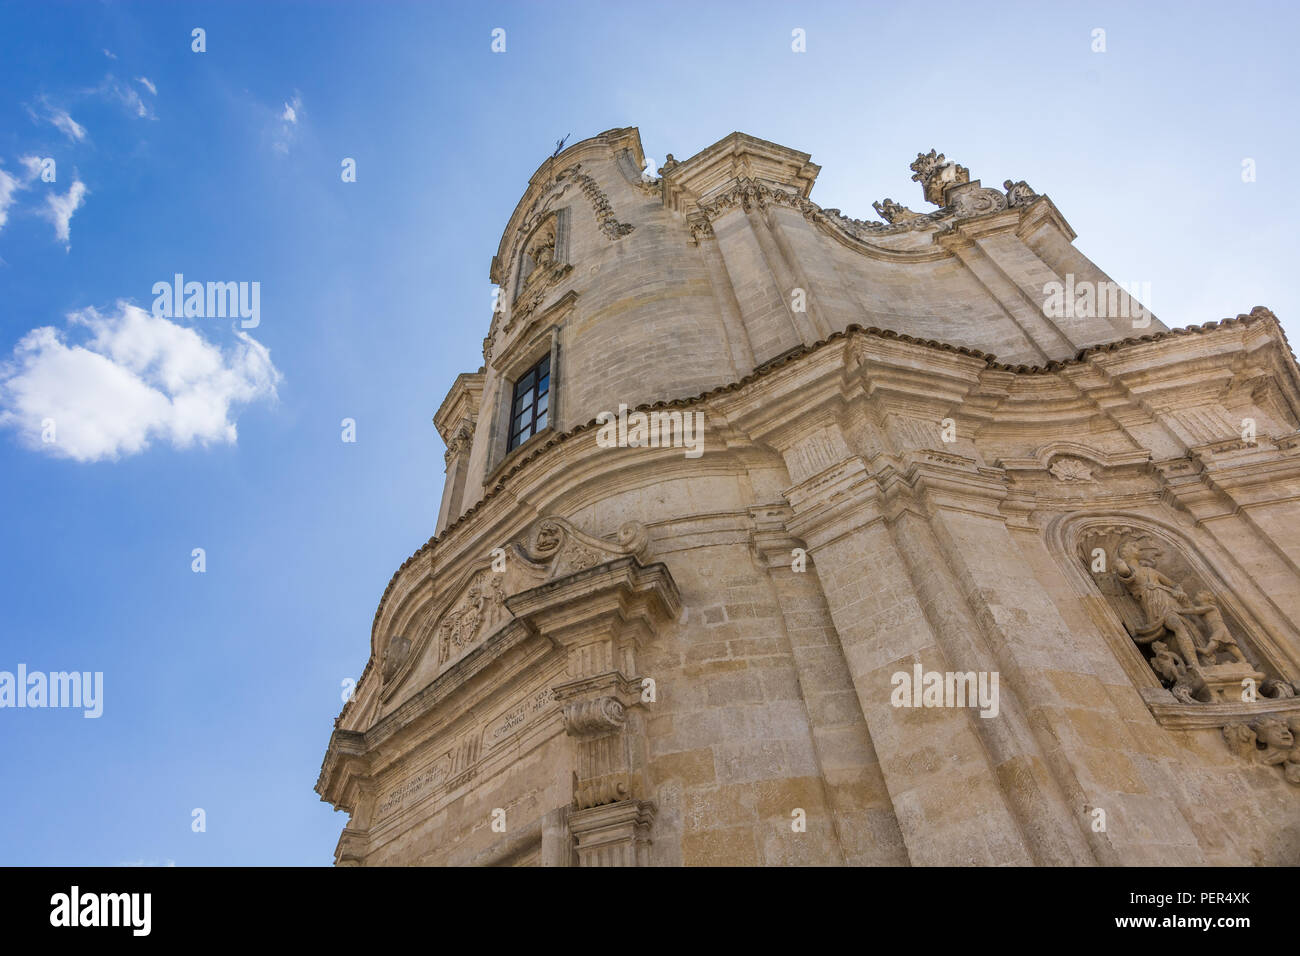 Dettaglio della città di Matera, Basilicata, Italia. Tuff Arcitecture dettaglio. Foto Stock